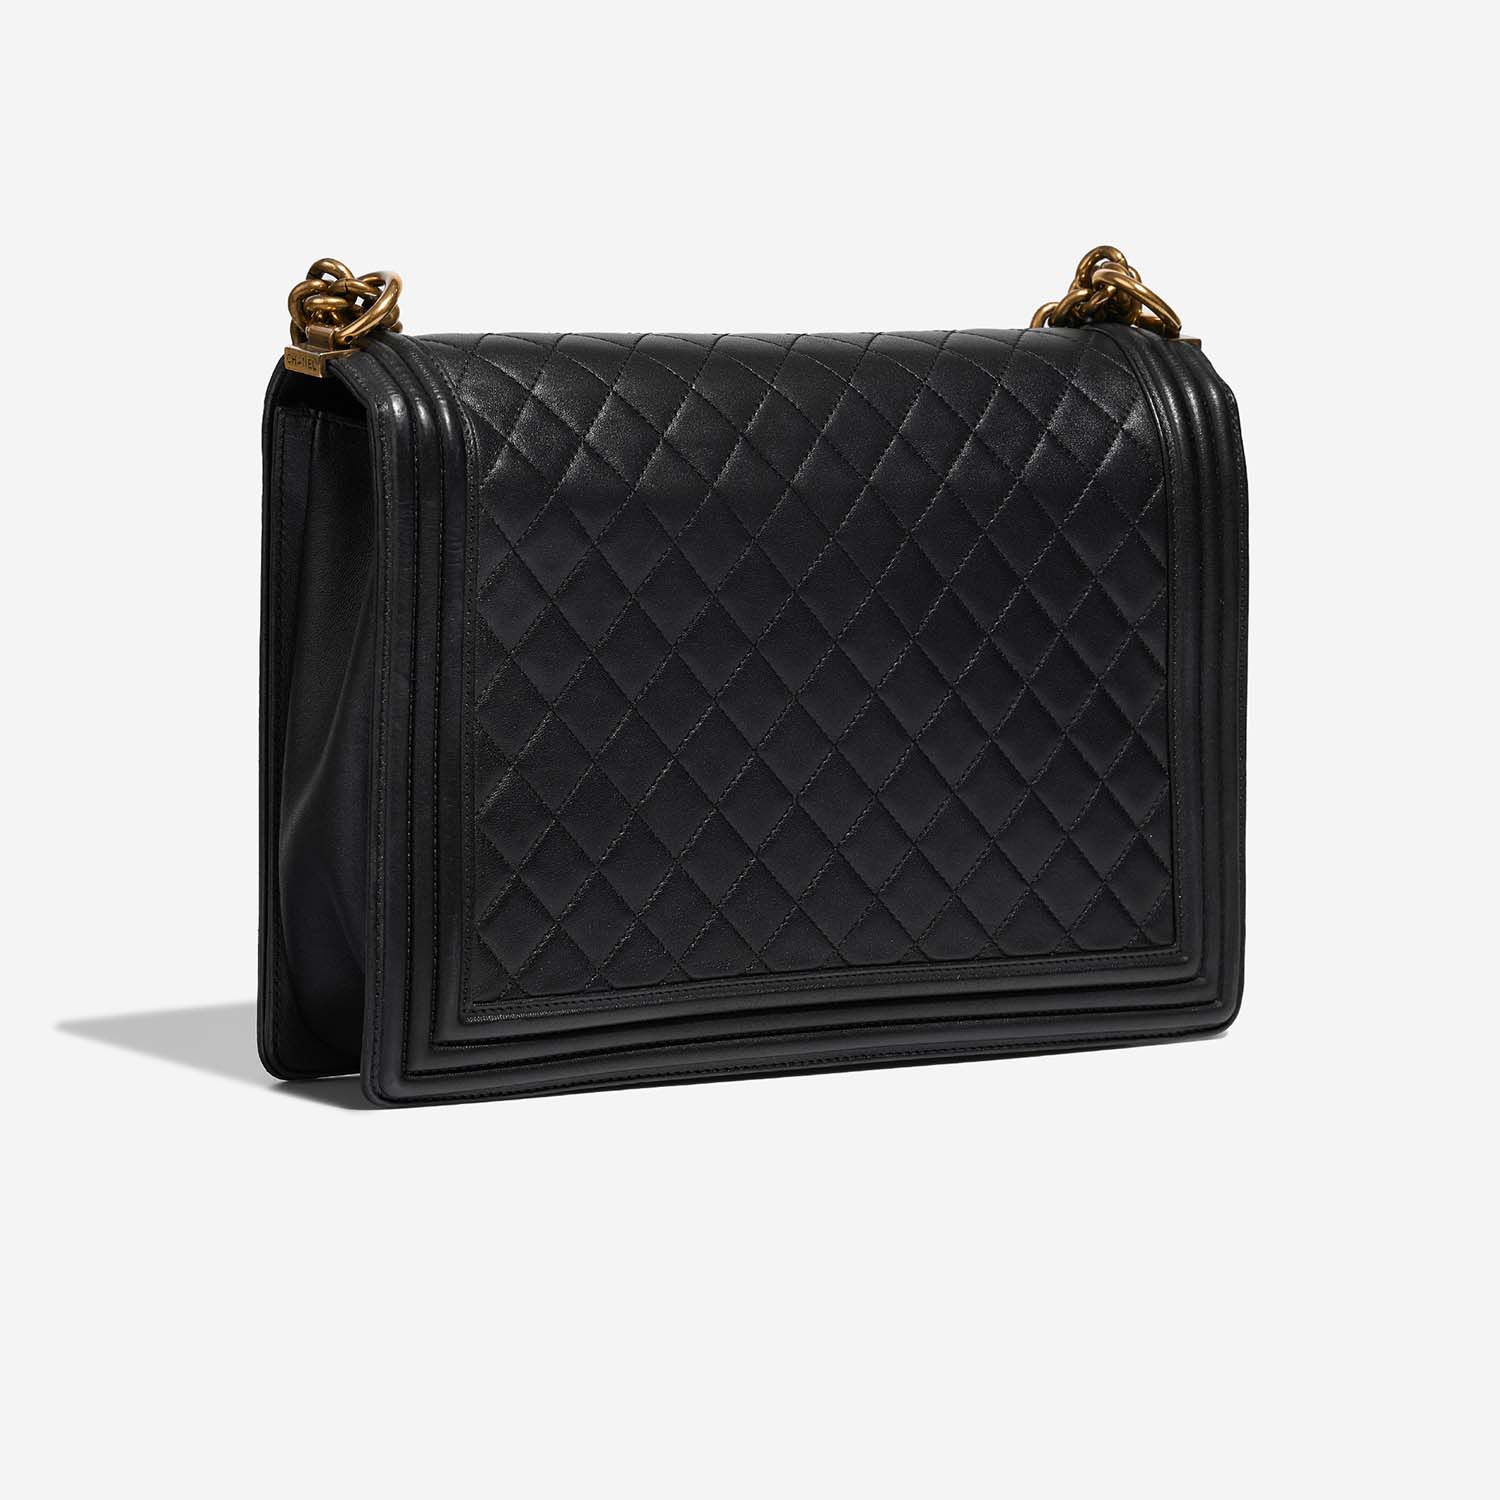 Chanel Boy Large Black Side Back | Sell your designer bag on Saclab.com